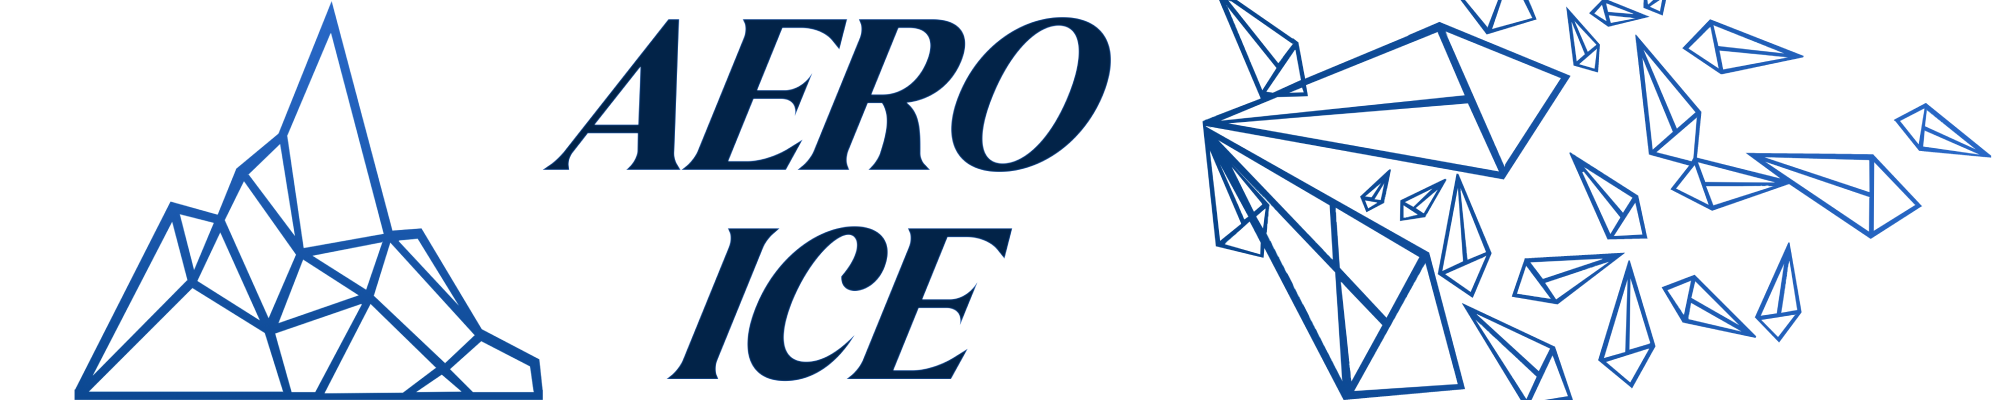 Aero Ice